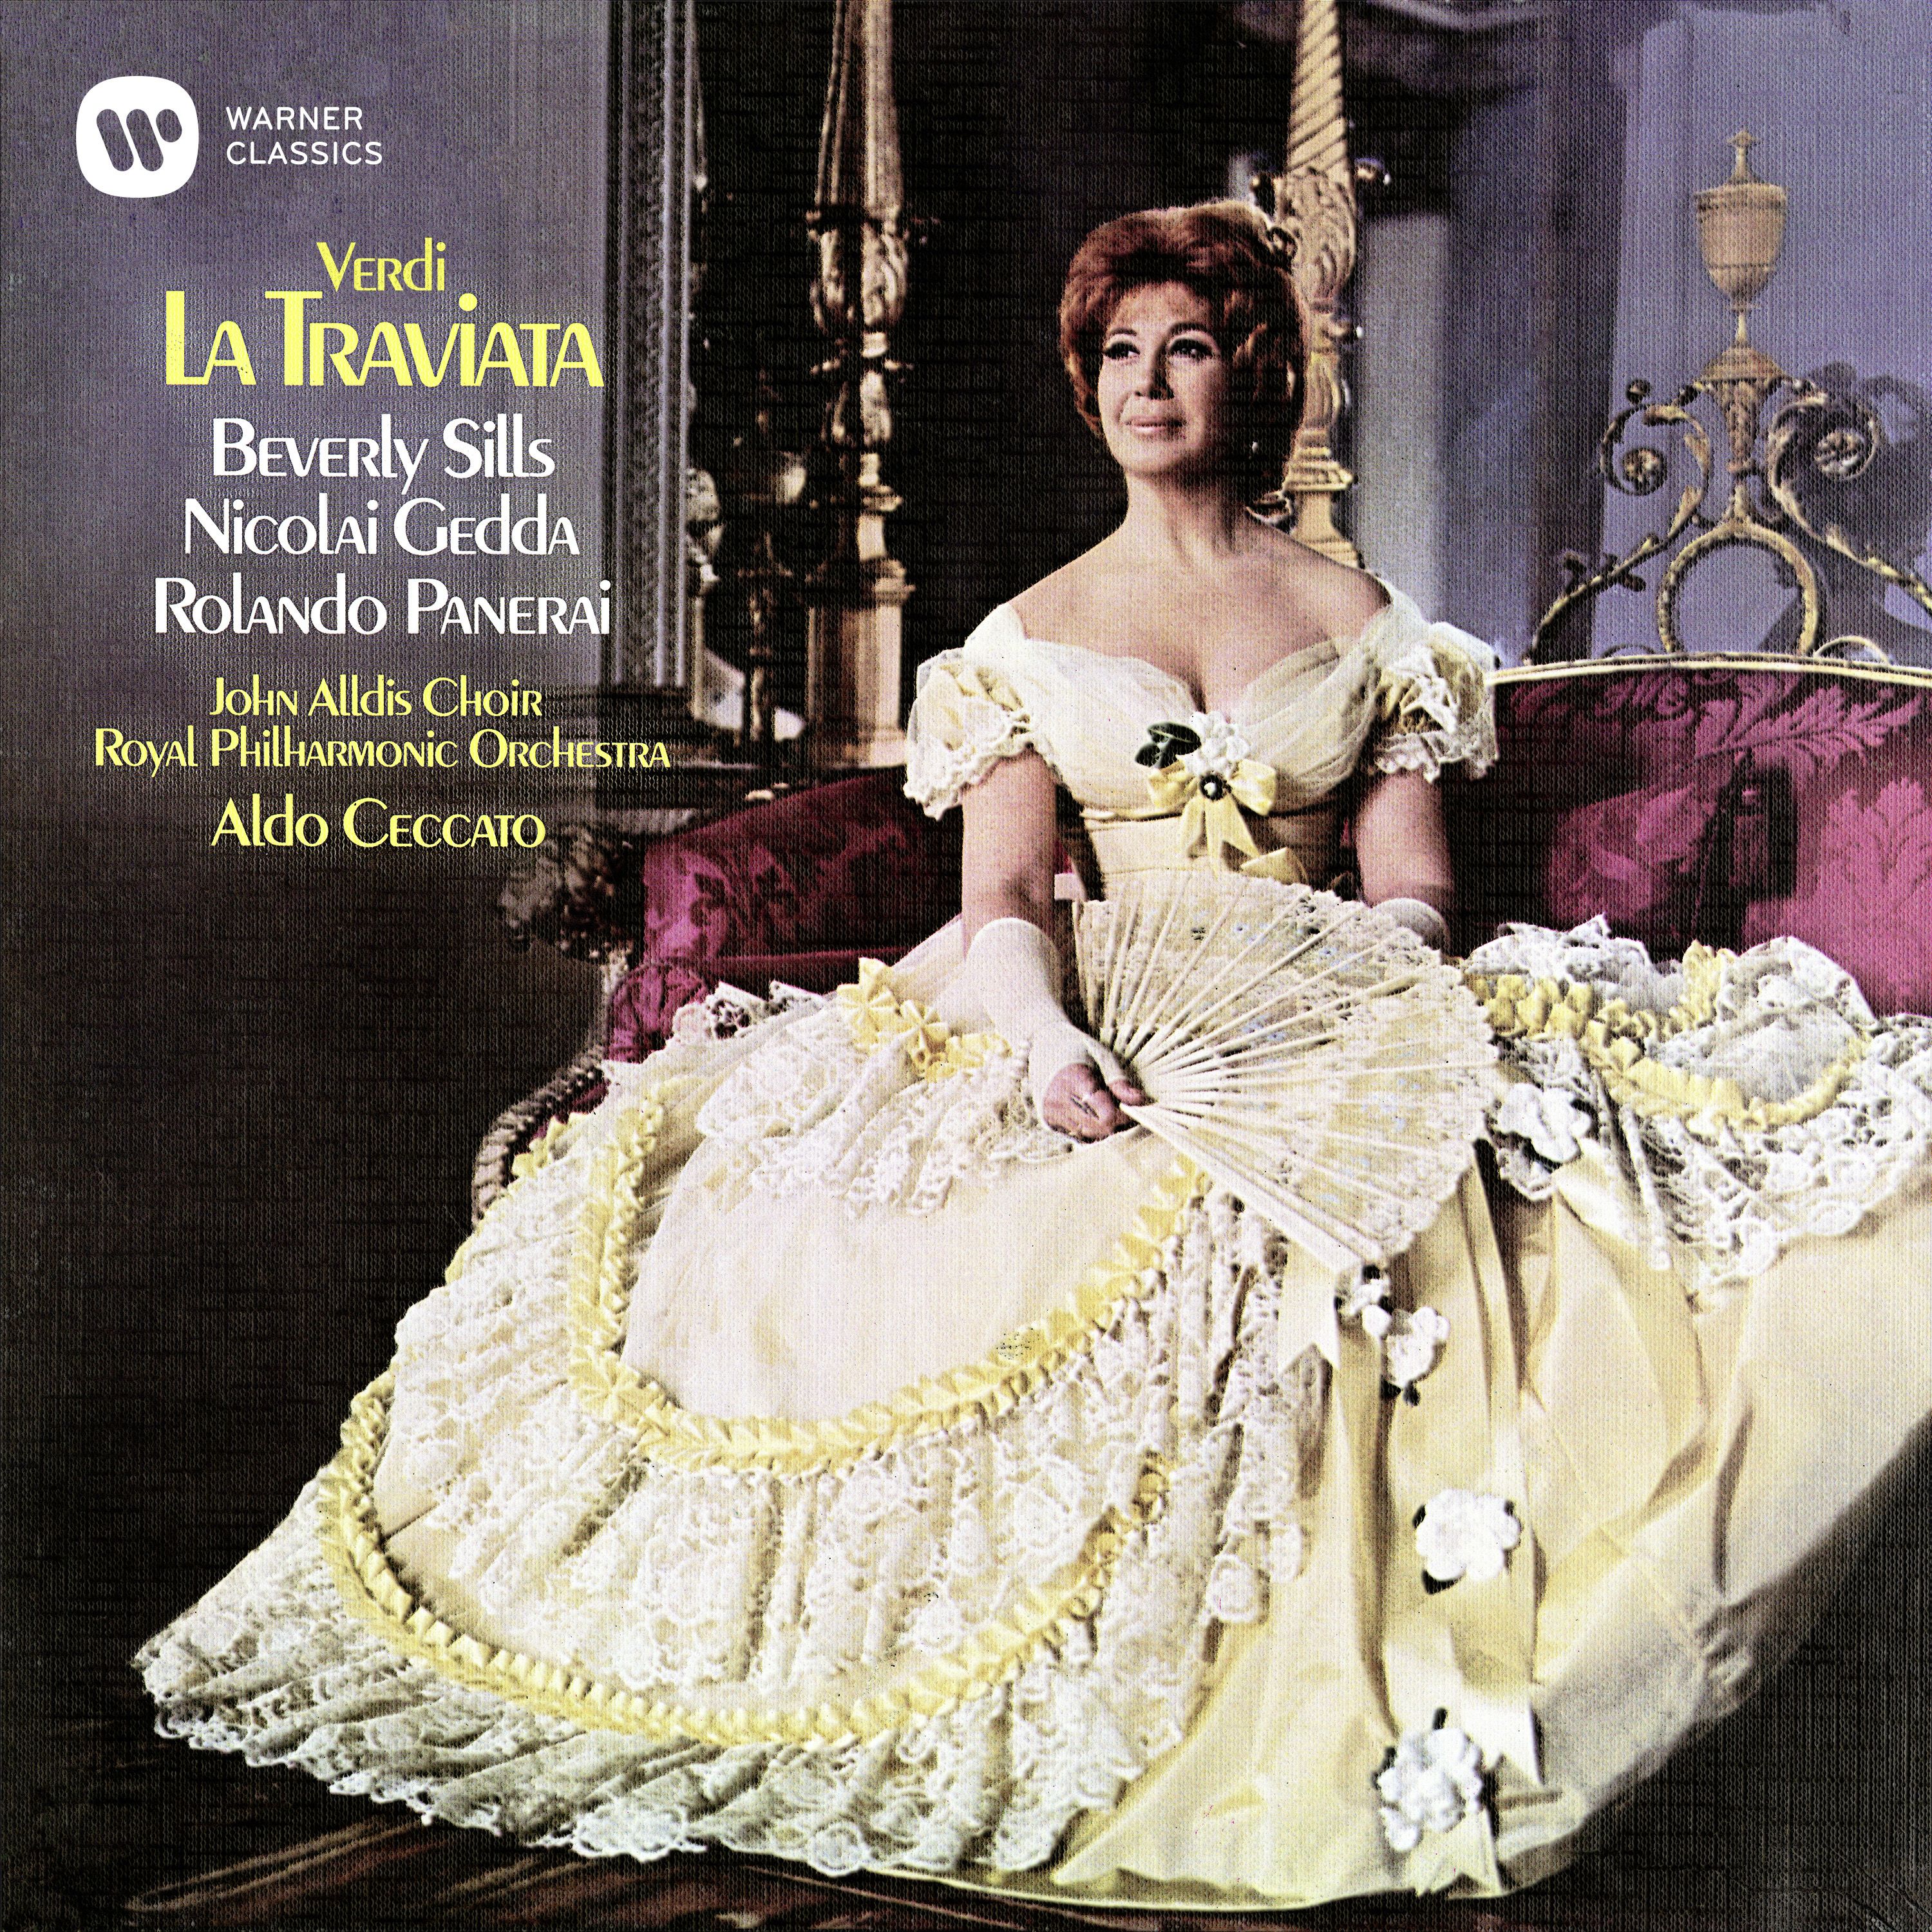 La Traviata, Act 2: "Alfredo? Per Parigi or or partiva" (Violetta, Annina, Giuseppe, Germont)